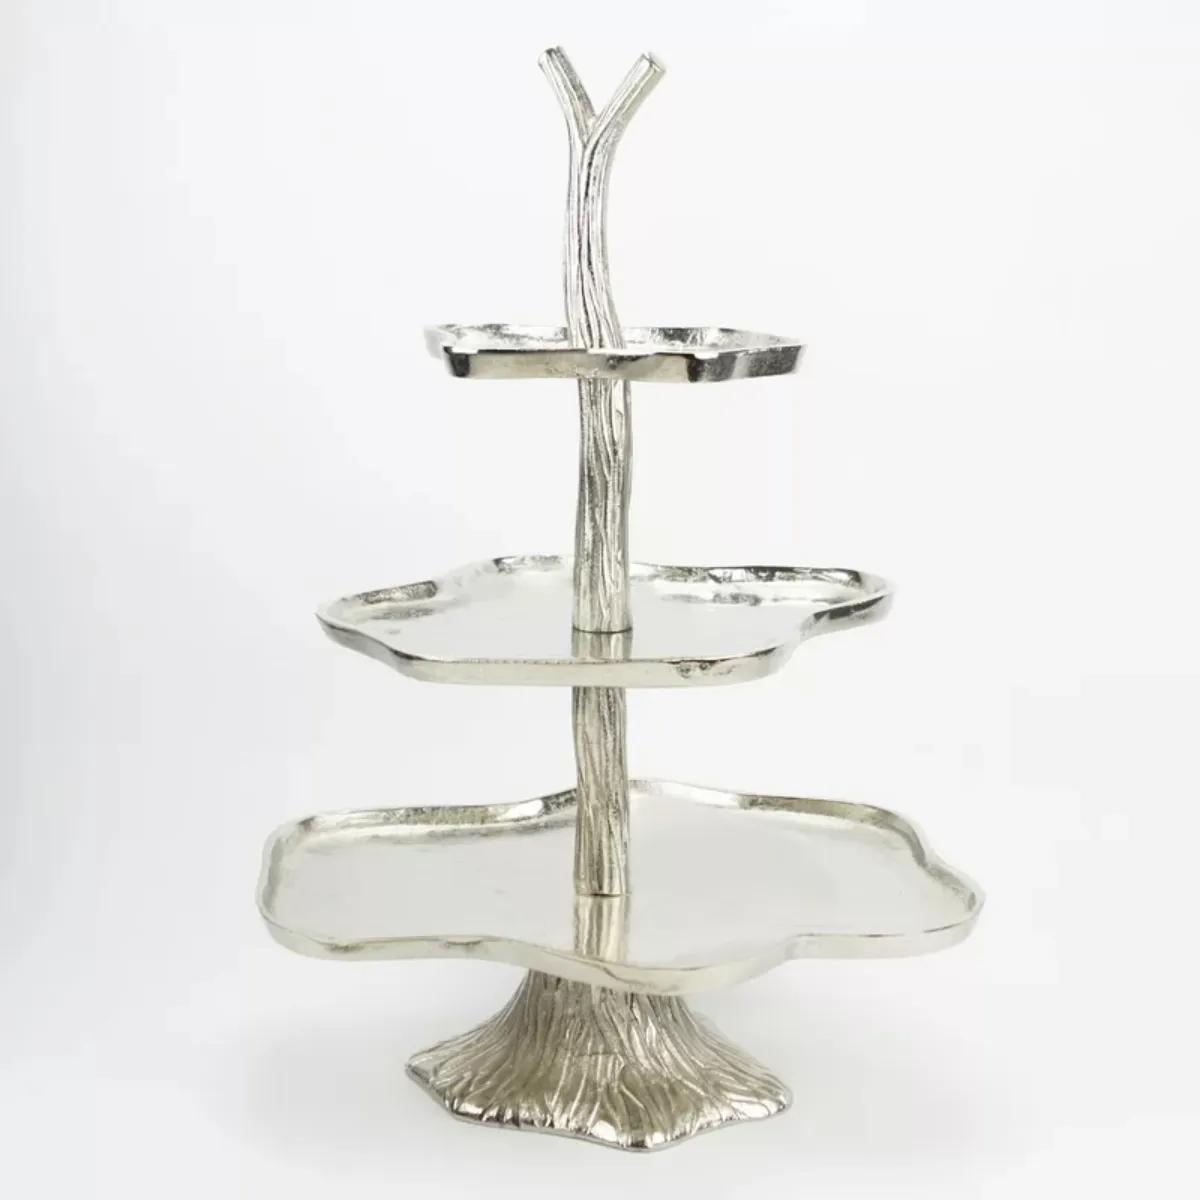 Soporte de aluminio para pasteles, forma antigua, mesa plateada para bodas, cumpleaños, otras ocasiones, utensilios para hornear para fiestas, suministros